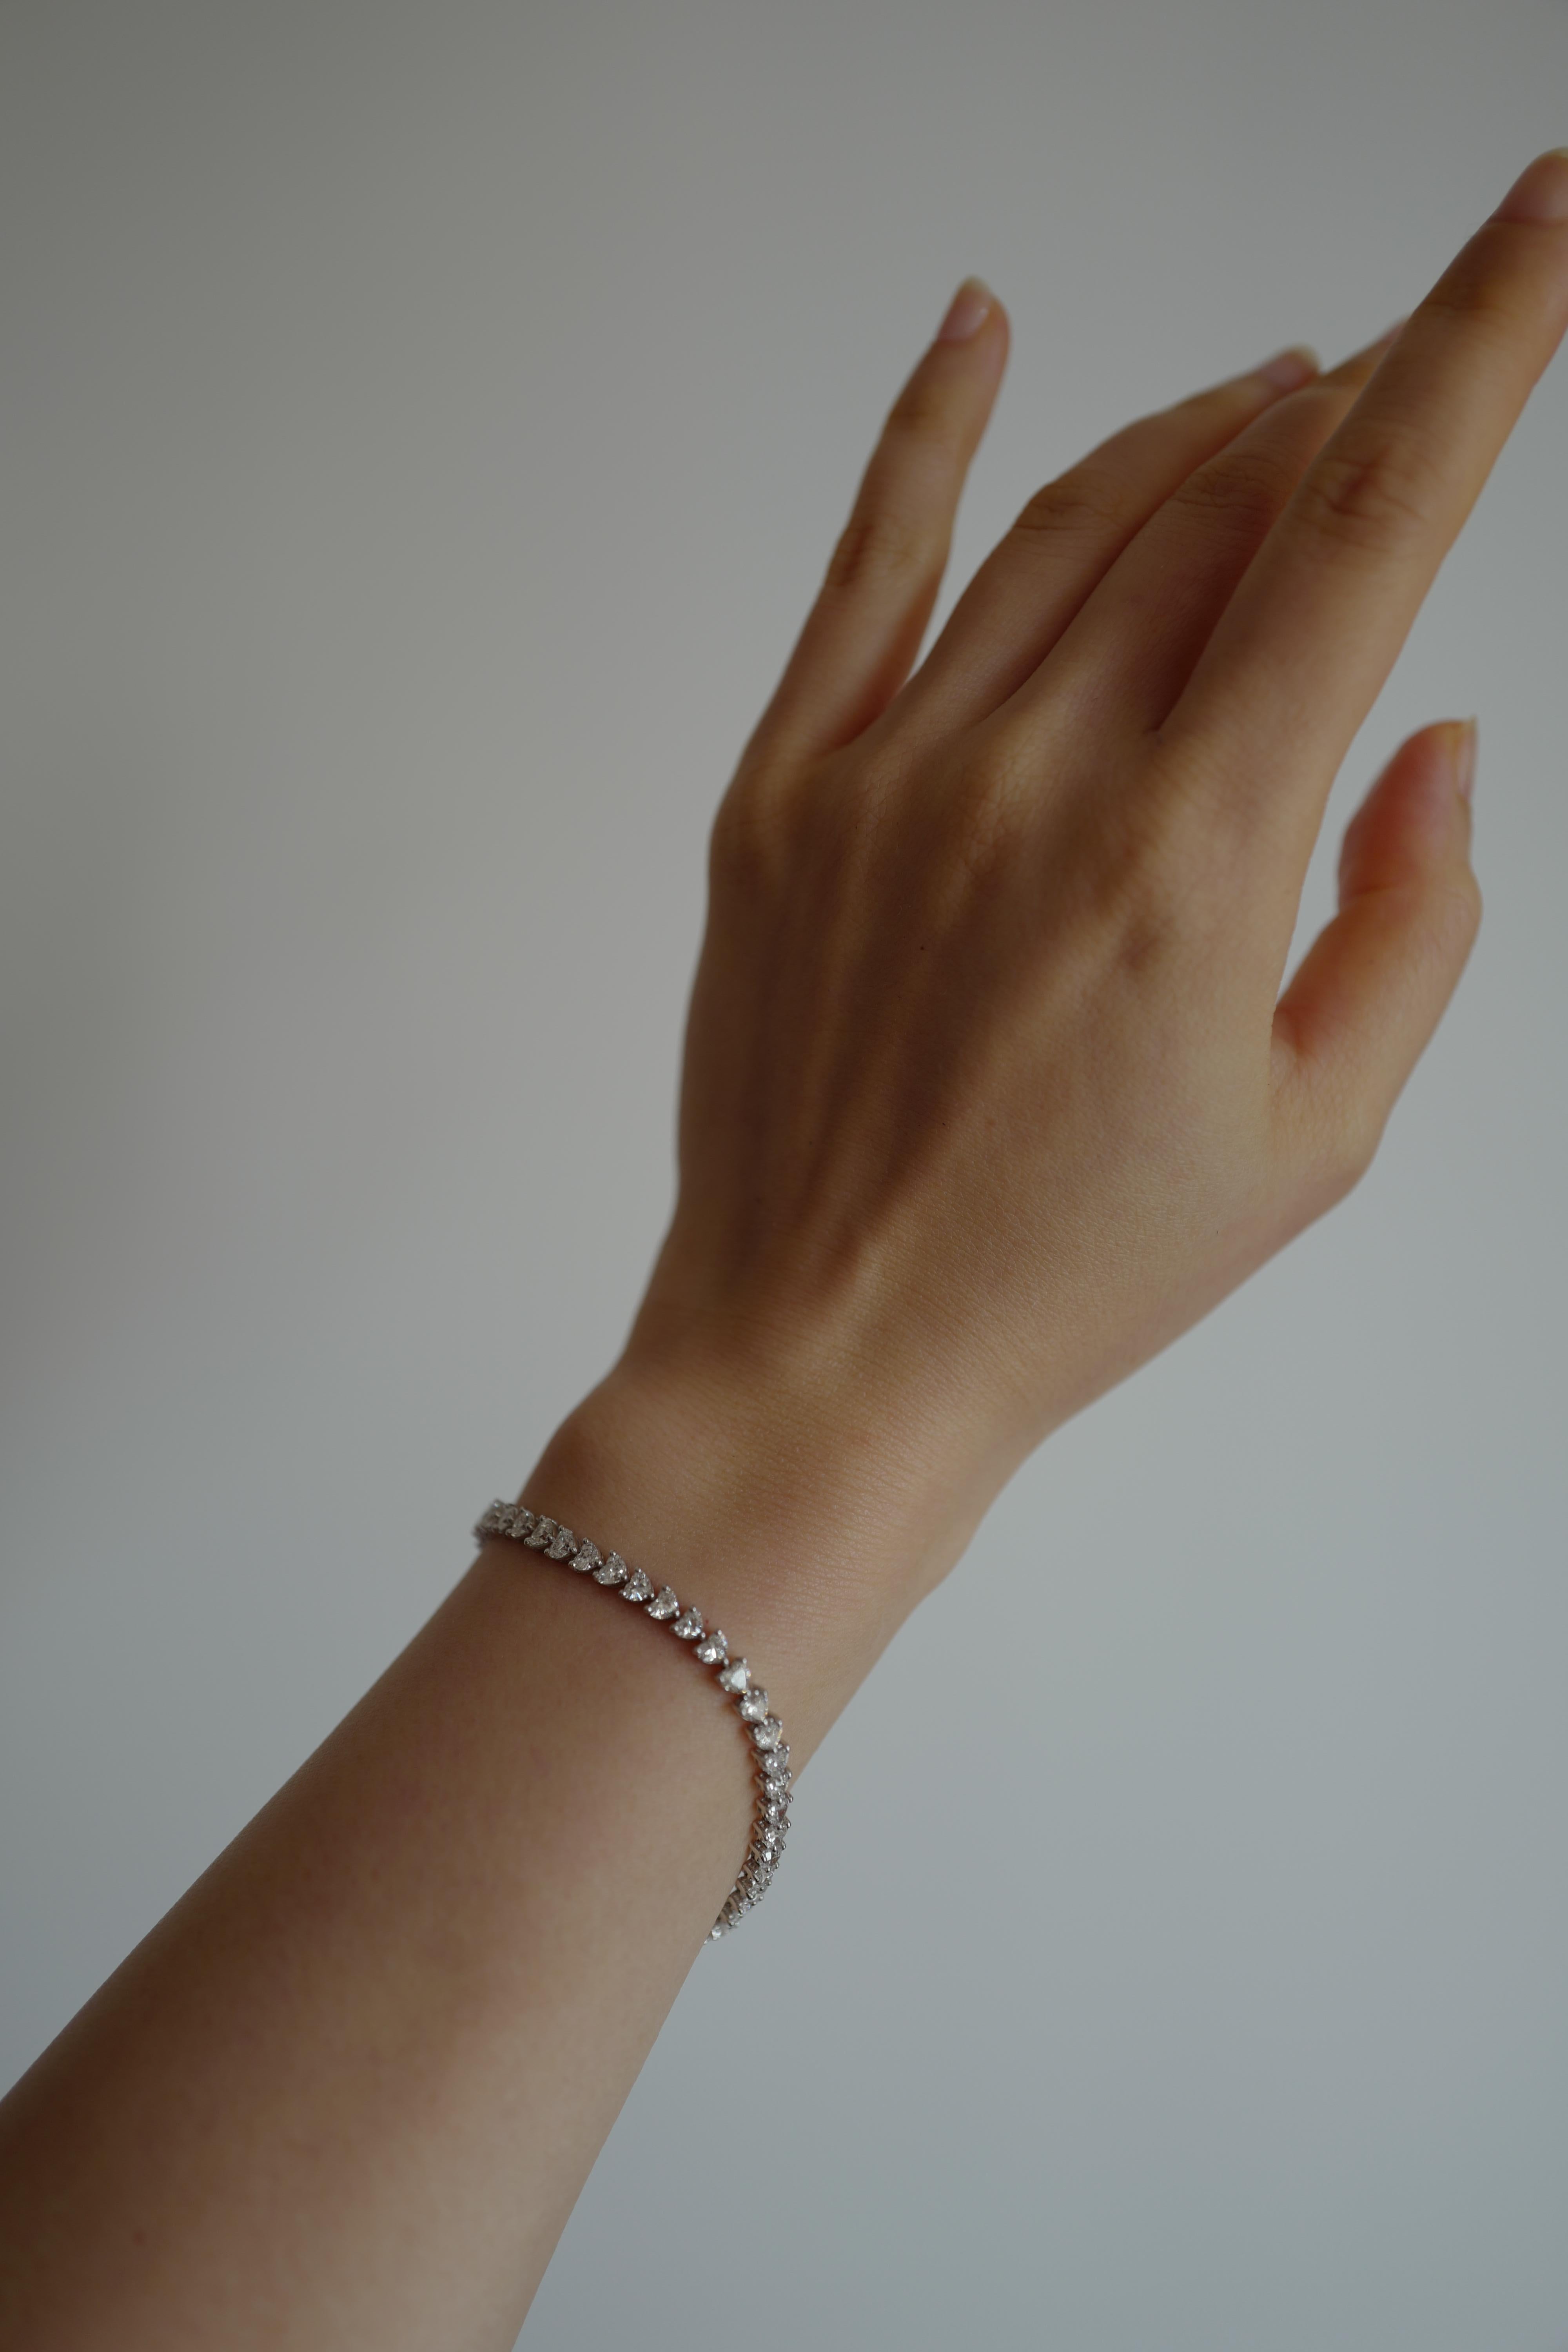 white 18k gold diamond bracelet quotes